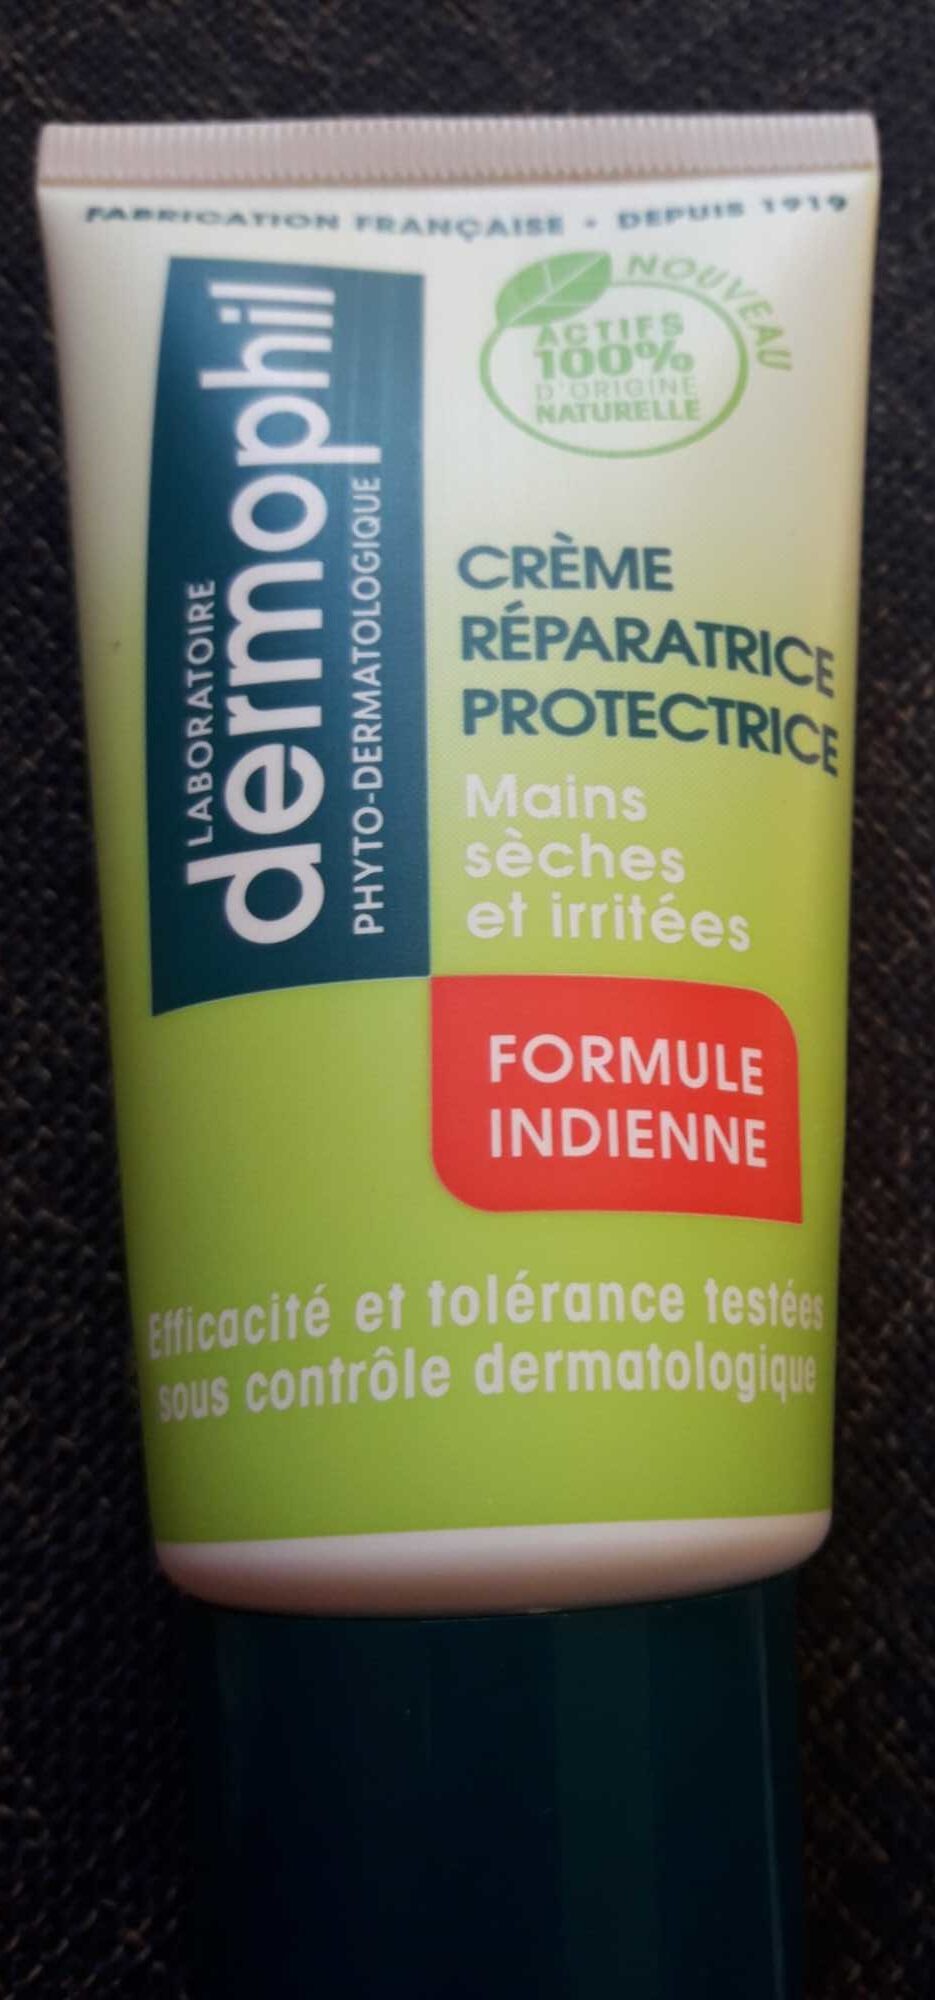 Crème réparatrice protectrice Mains sèches et irritées - Product - fr